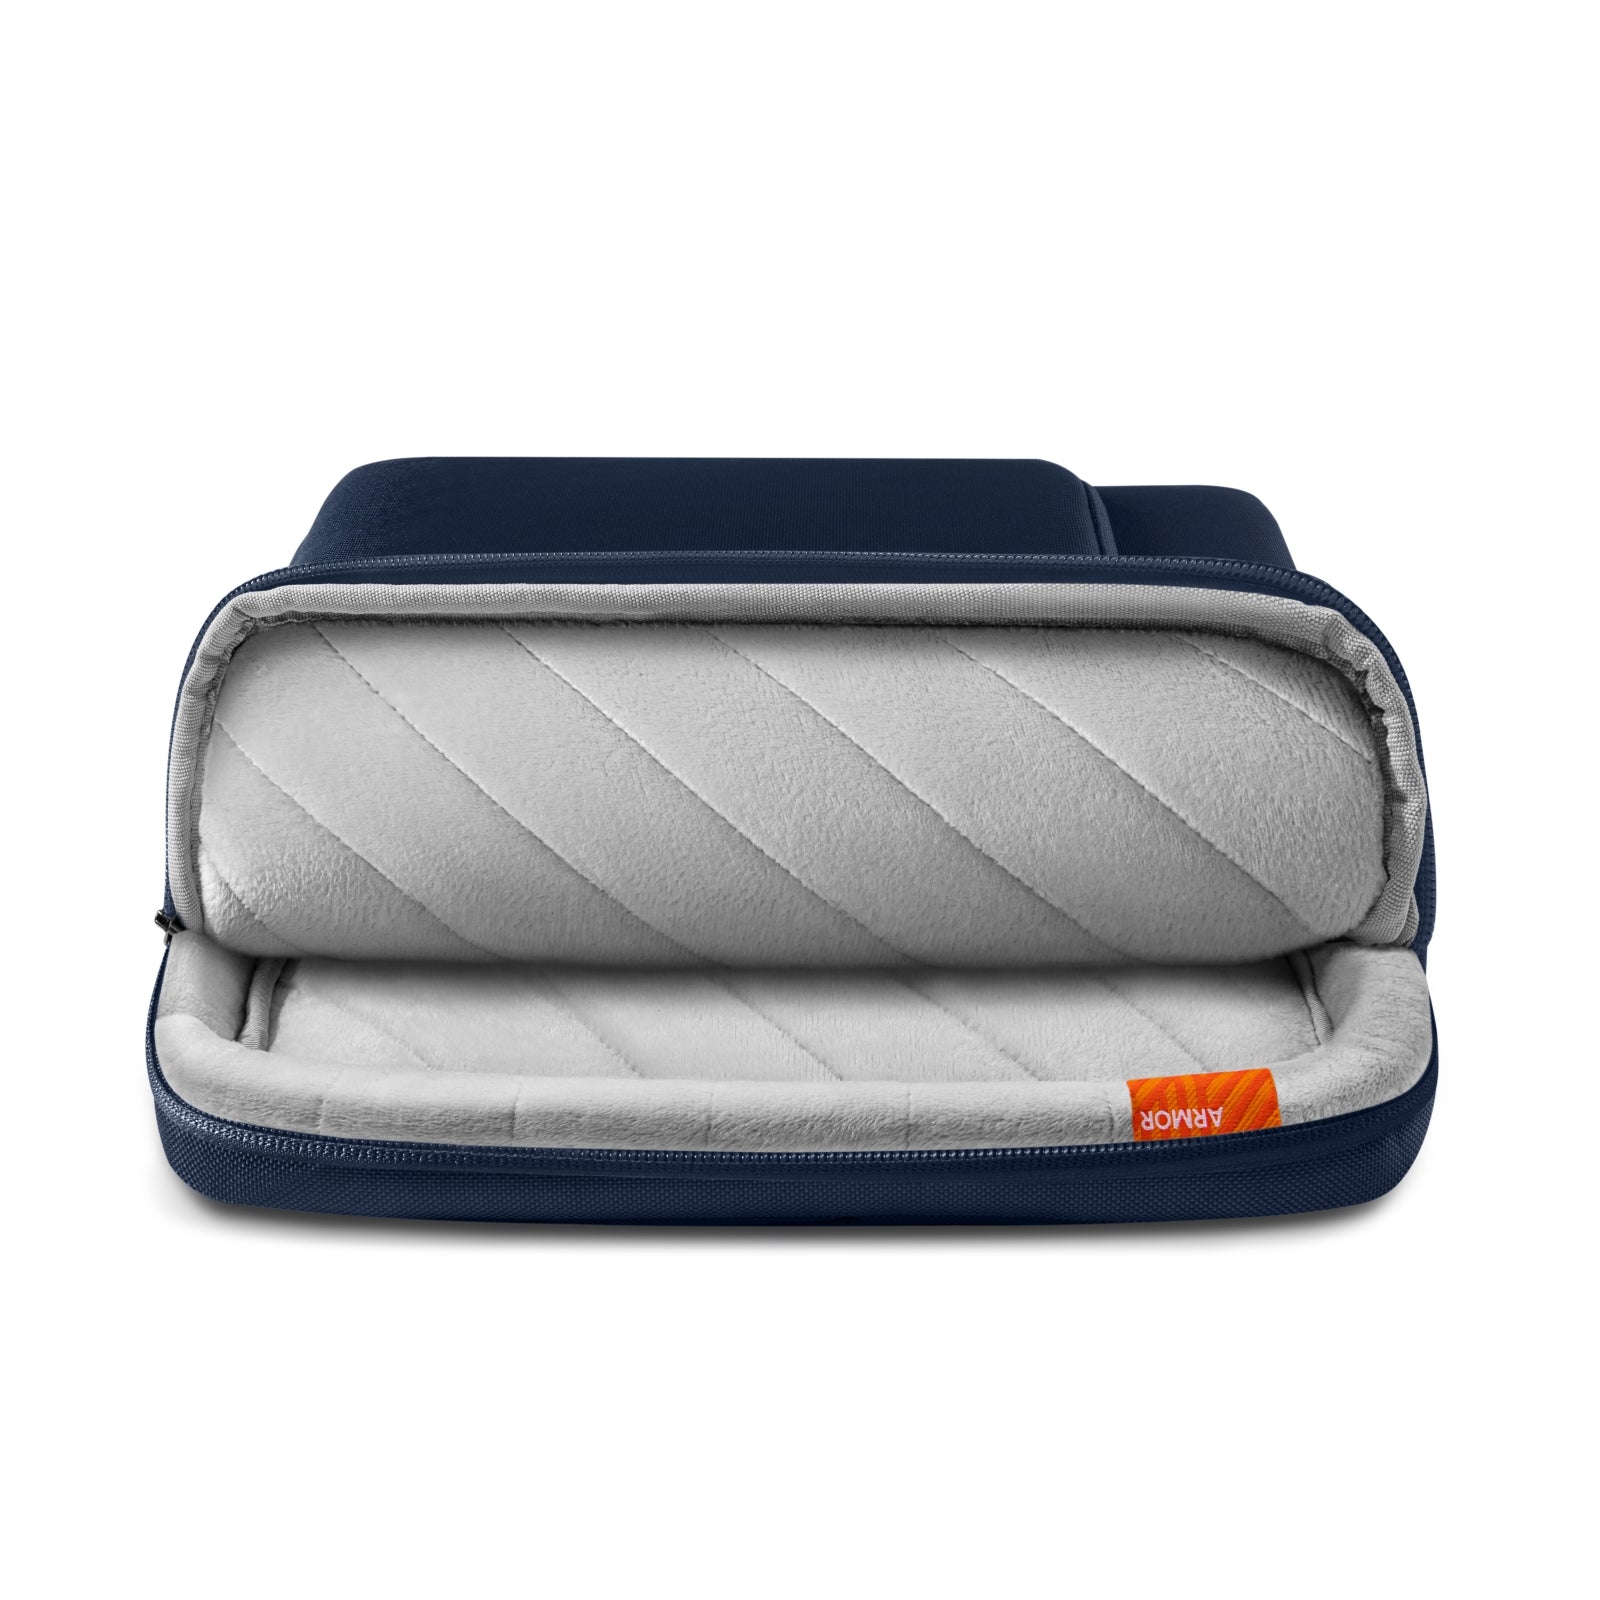 Defender-A14 Laptop Handbag For 13.5-14.4-inch Laptop